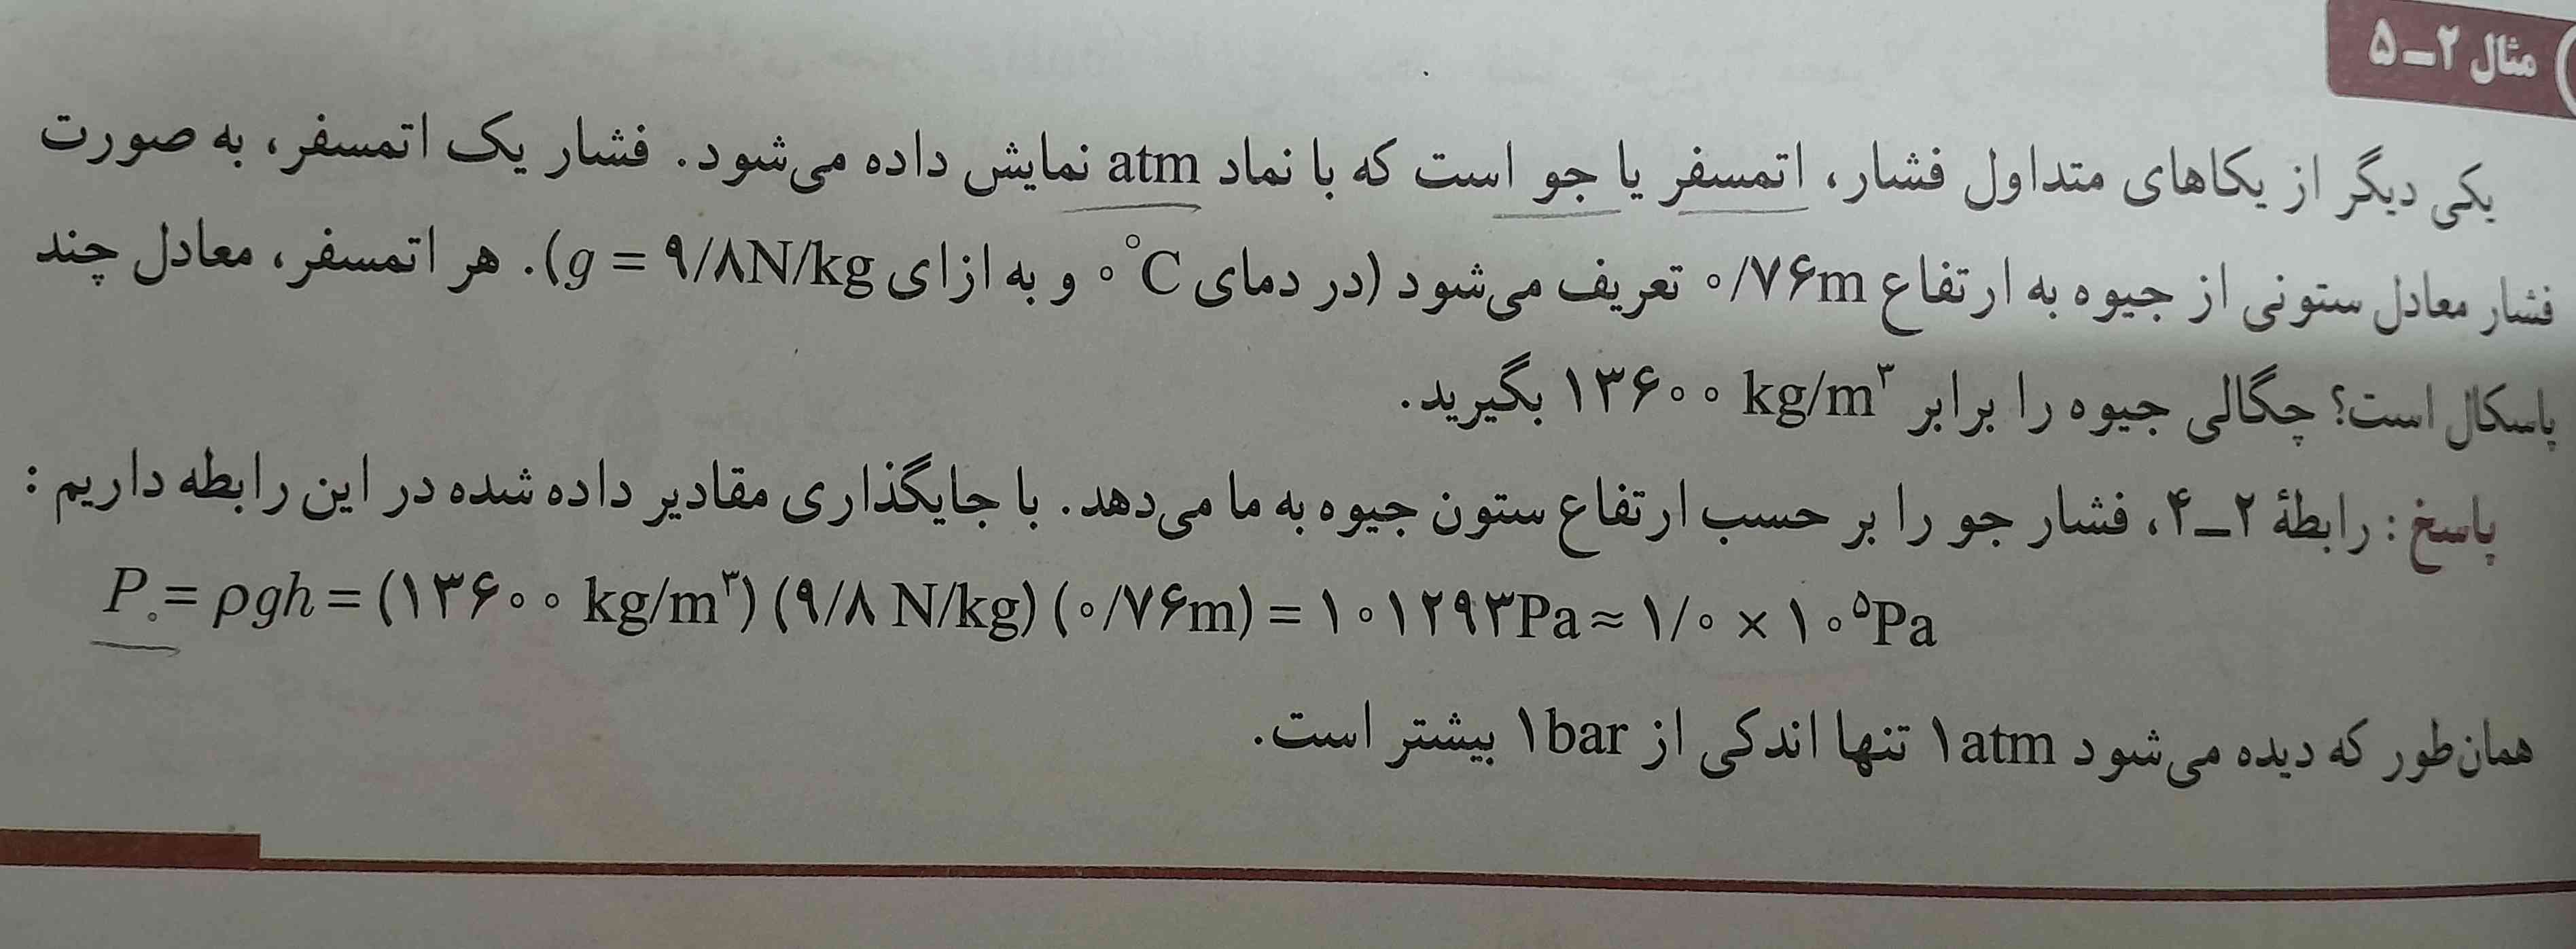 چرا از این فرمول استفاده میکنیم 